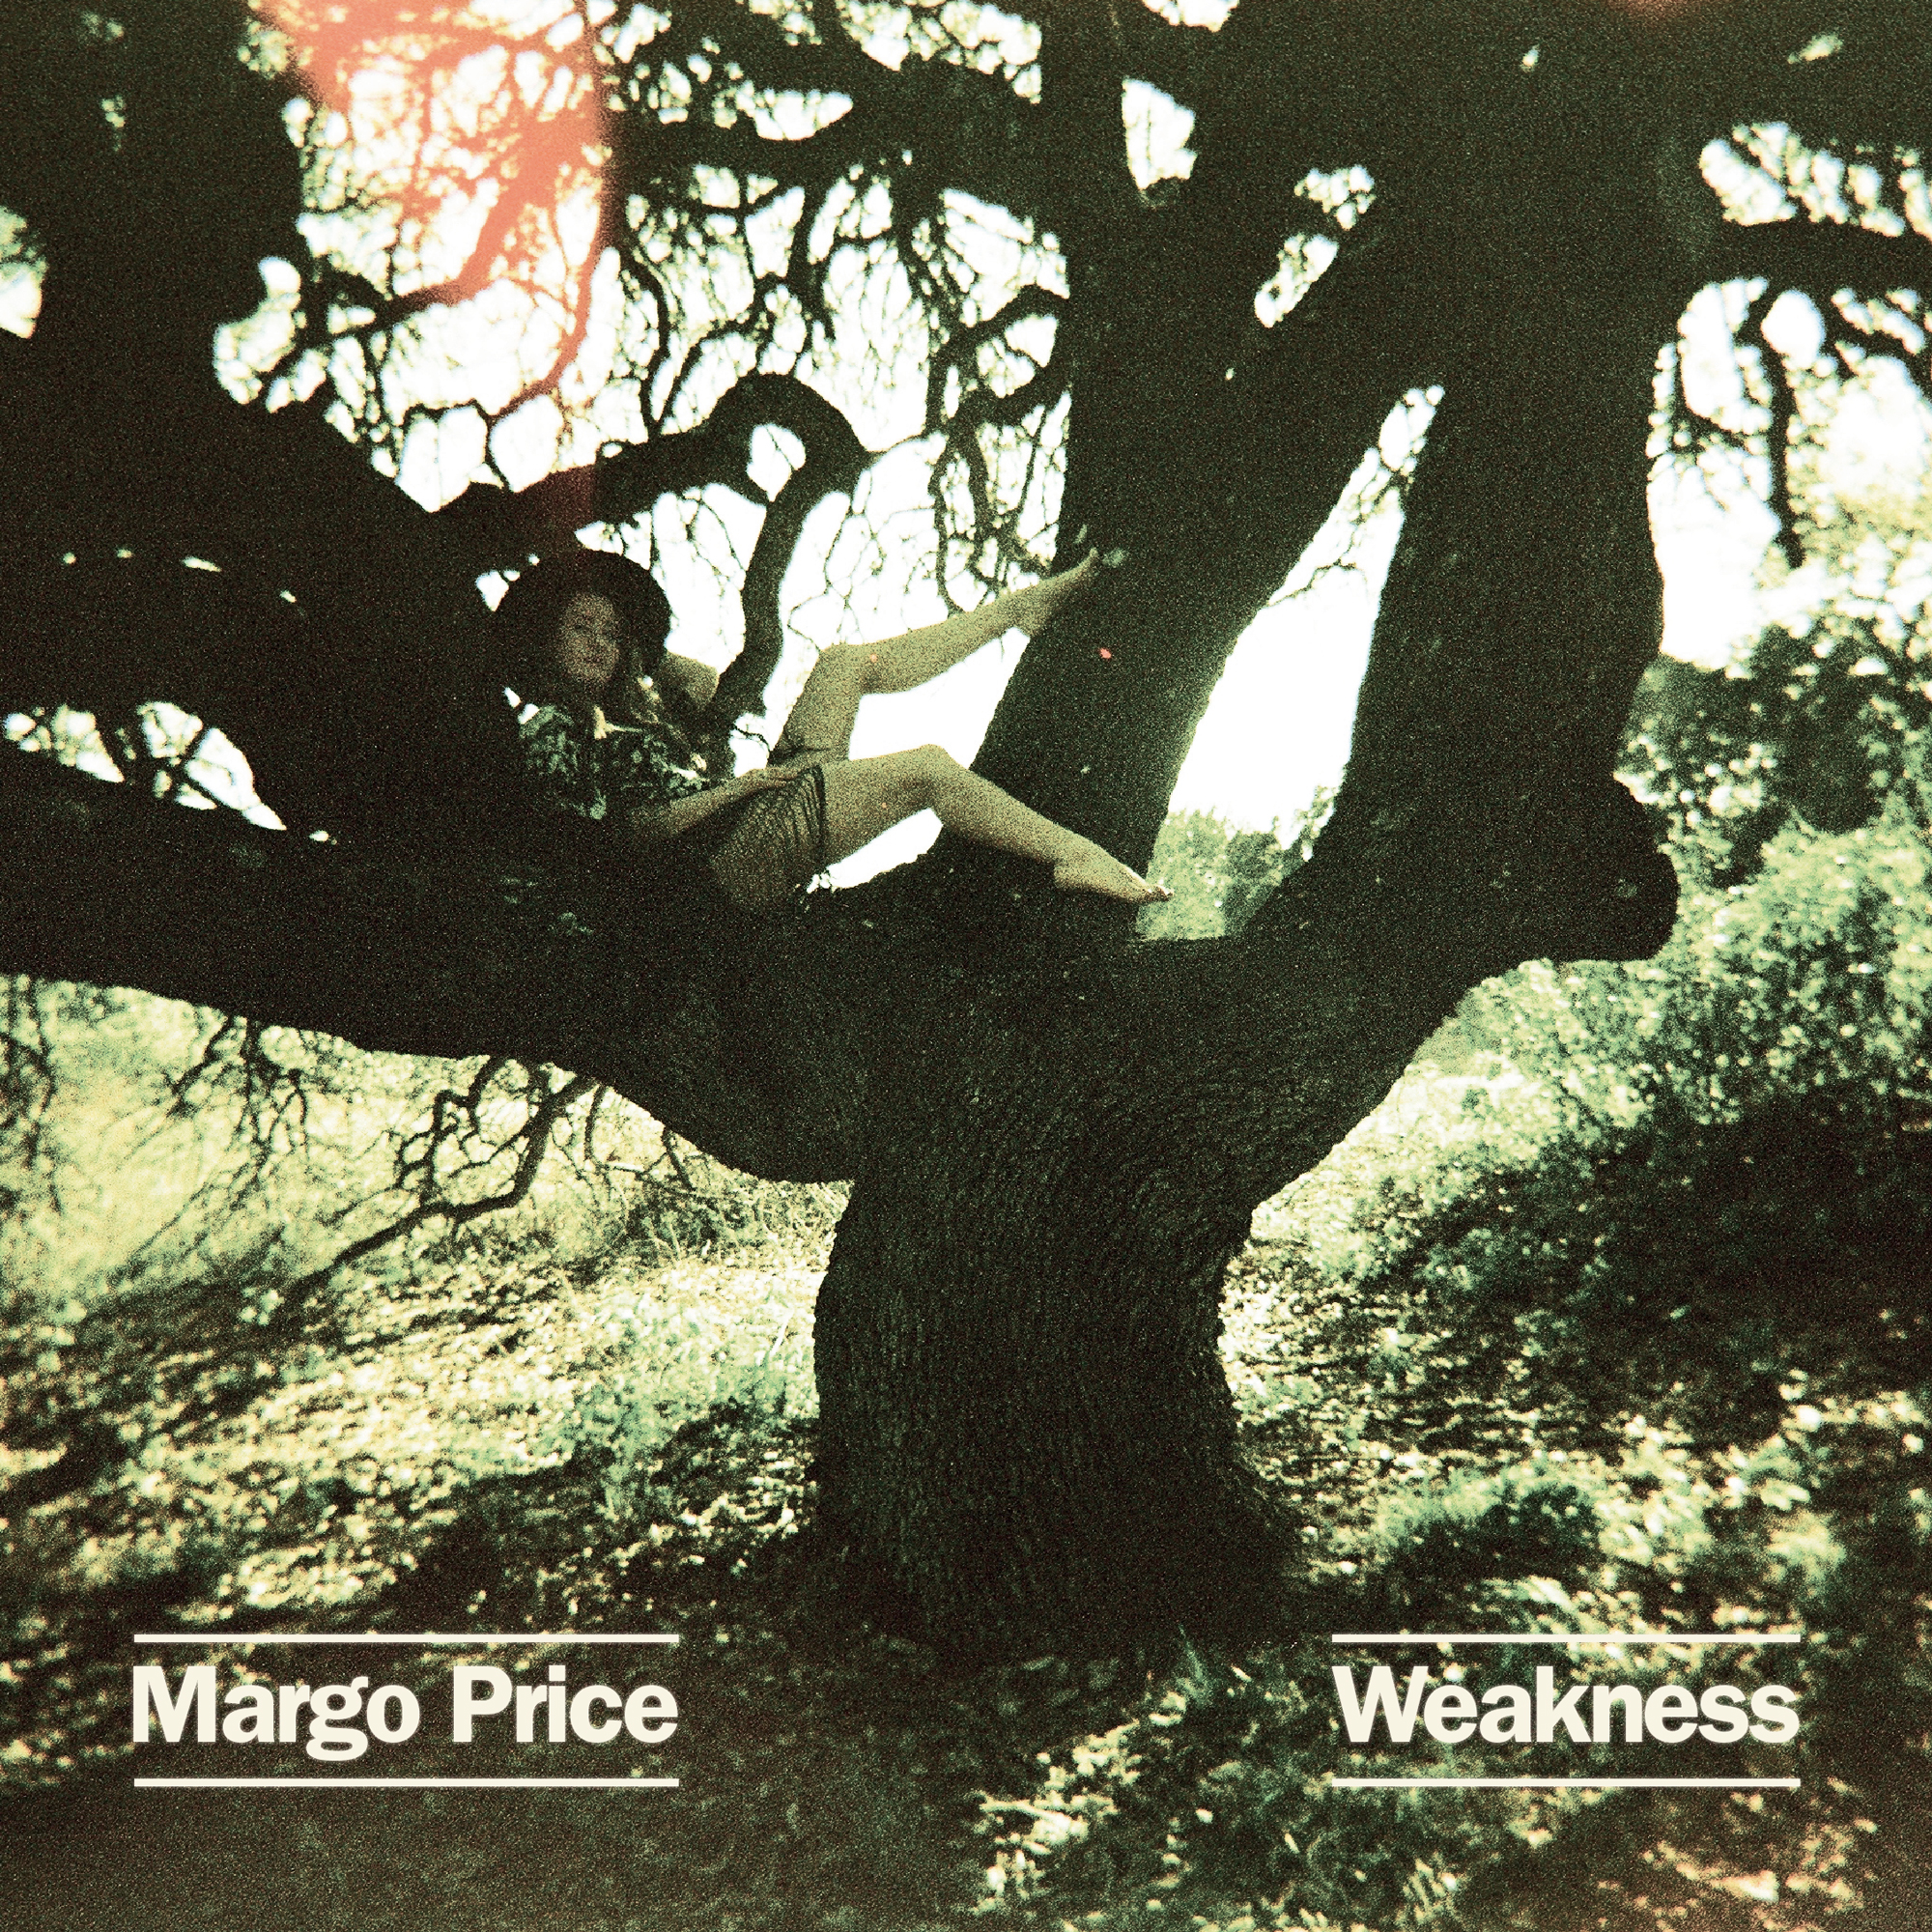 Margo Price's Weakness EP